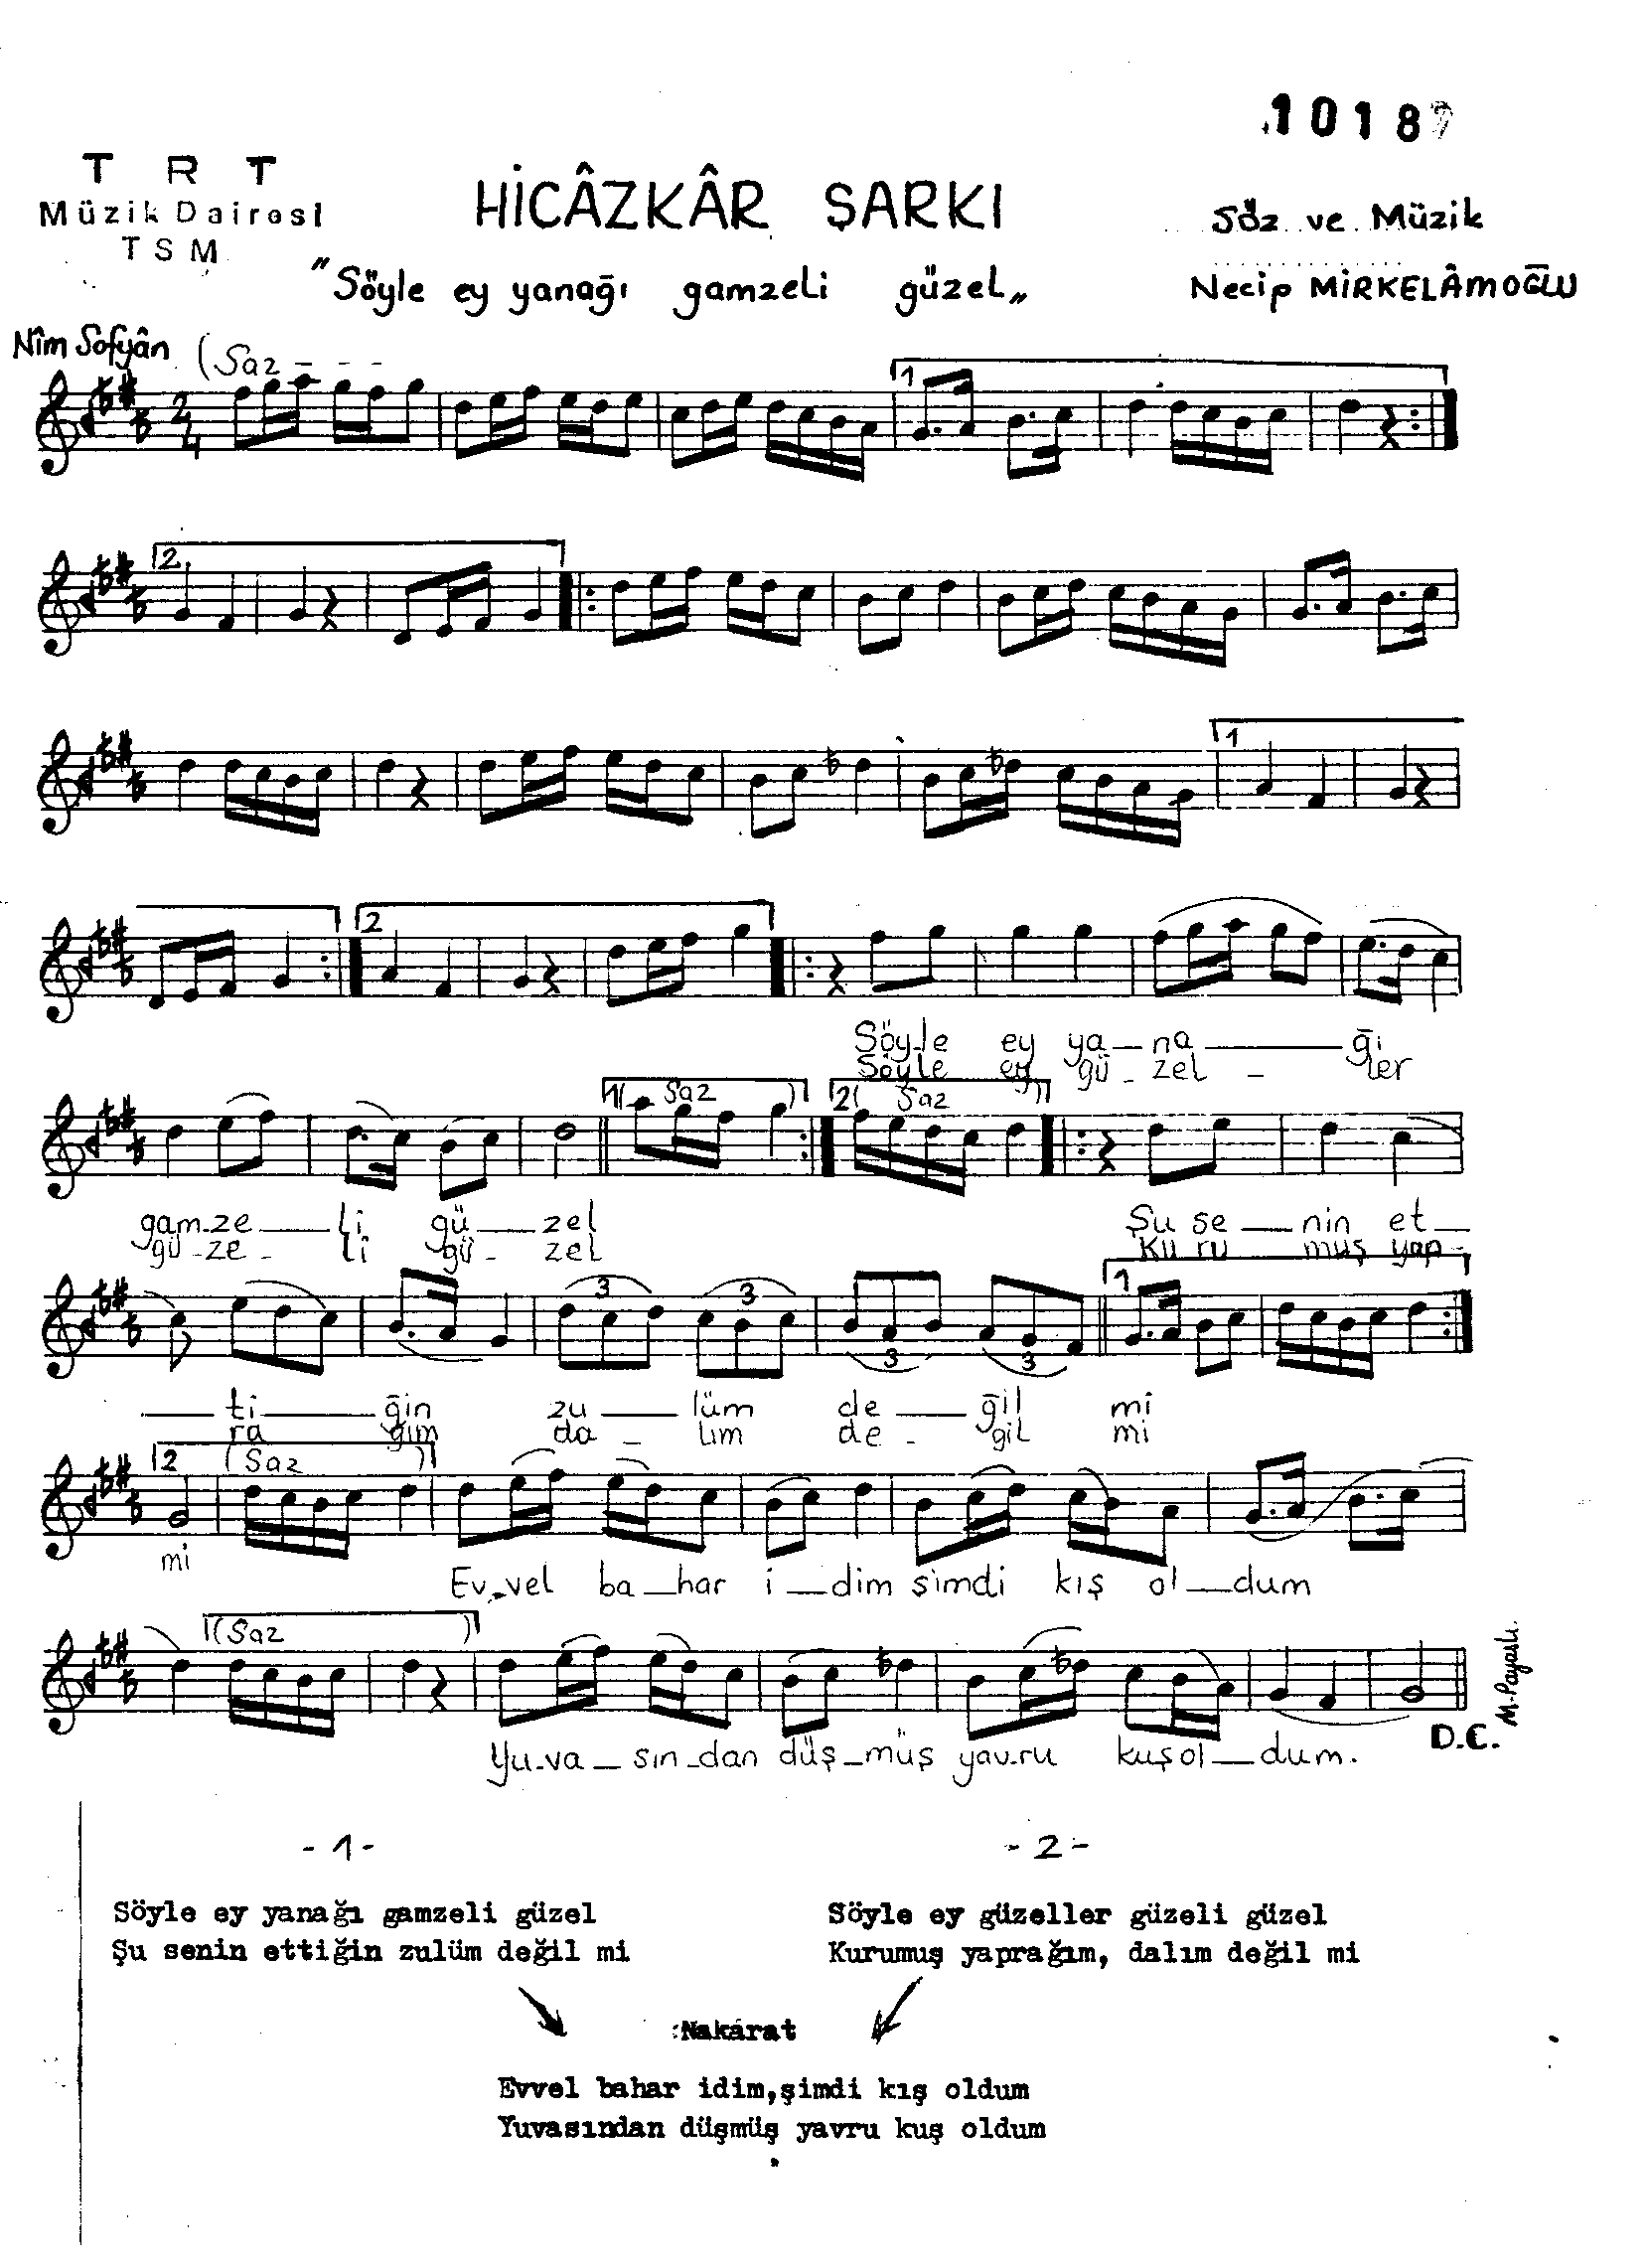 Hicâzkâr - Şarkı - Necip Mirkelâmoğlu - Sayfa 1